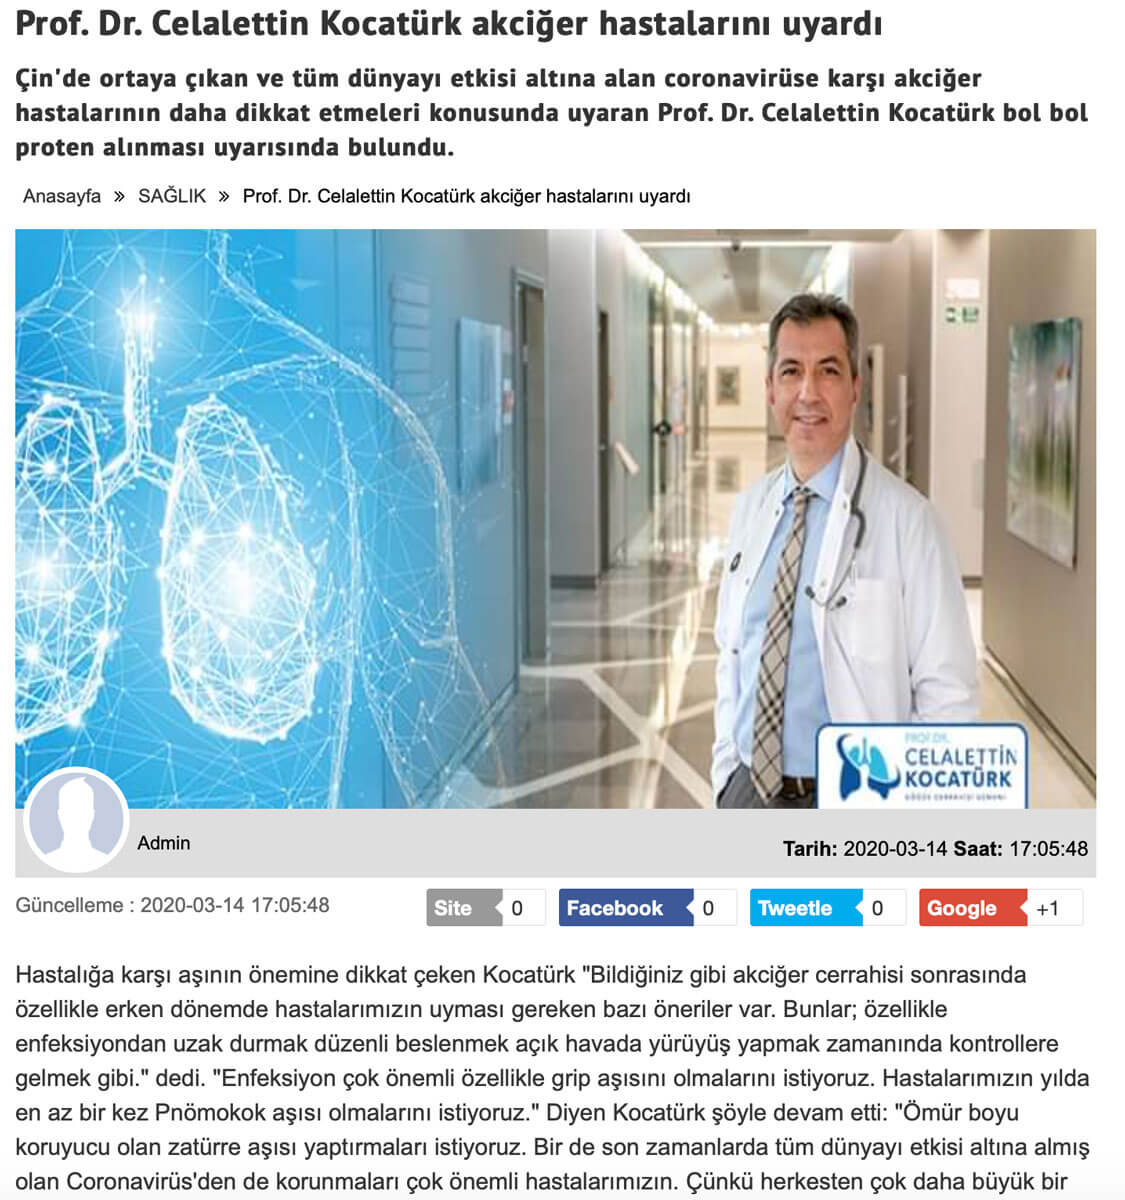 Prof. Dr. Celalettin Kocatürk akciğer hastalarını uyardı